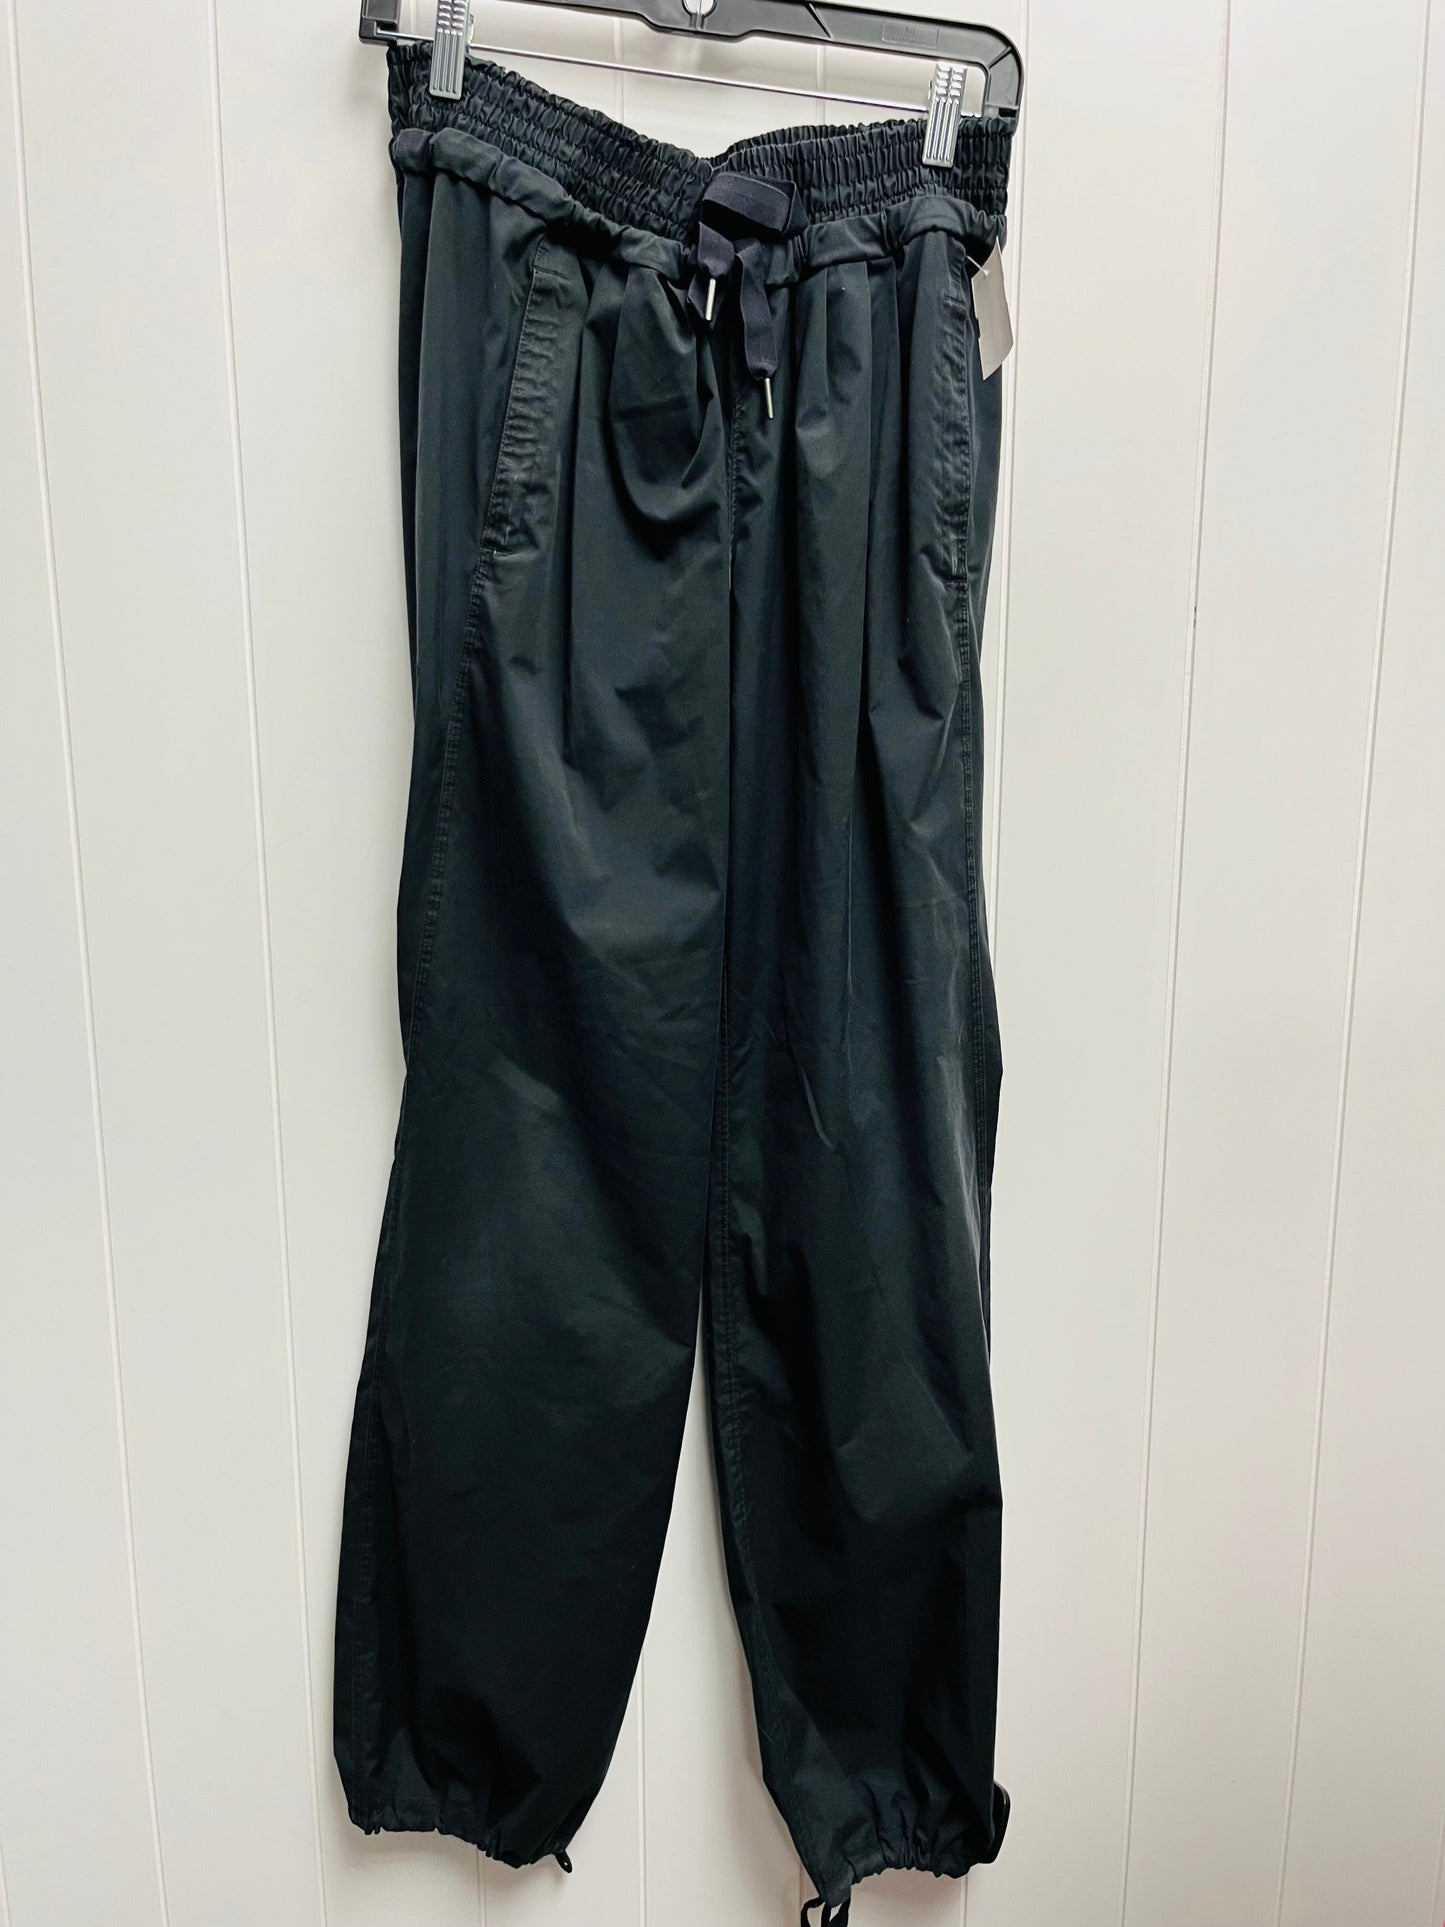 Black Athletic Pants Lululemon, Size 10